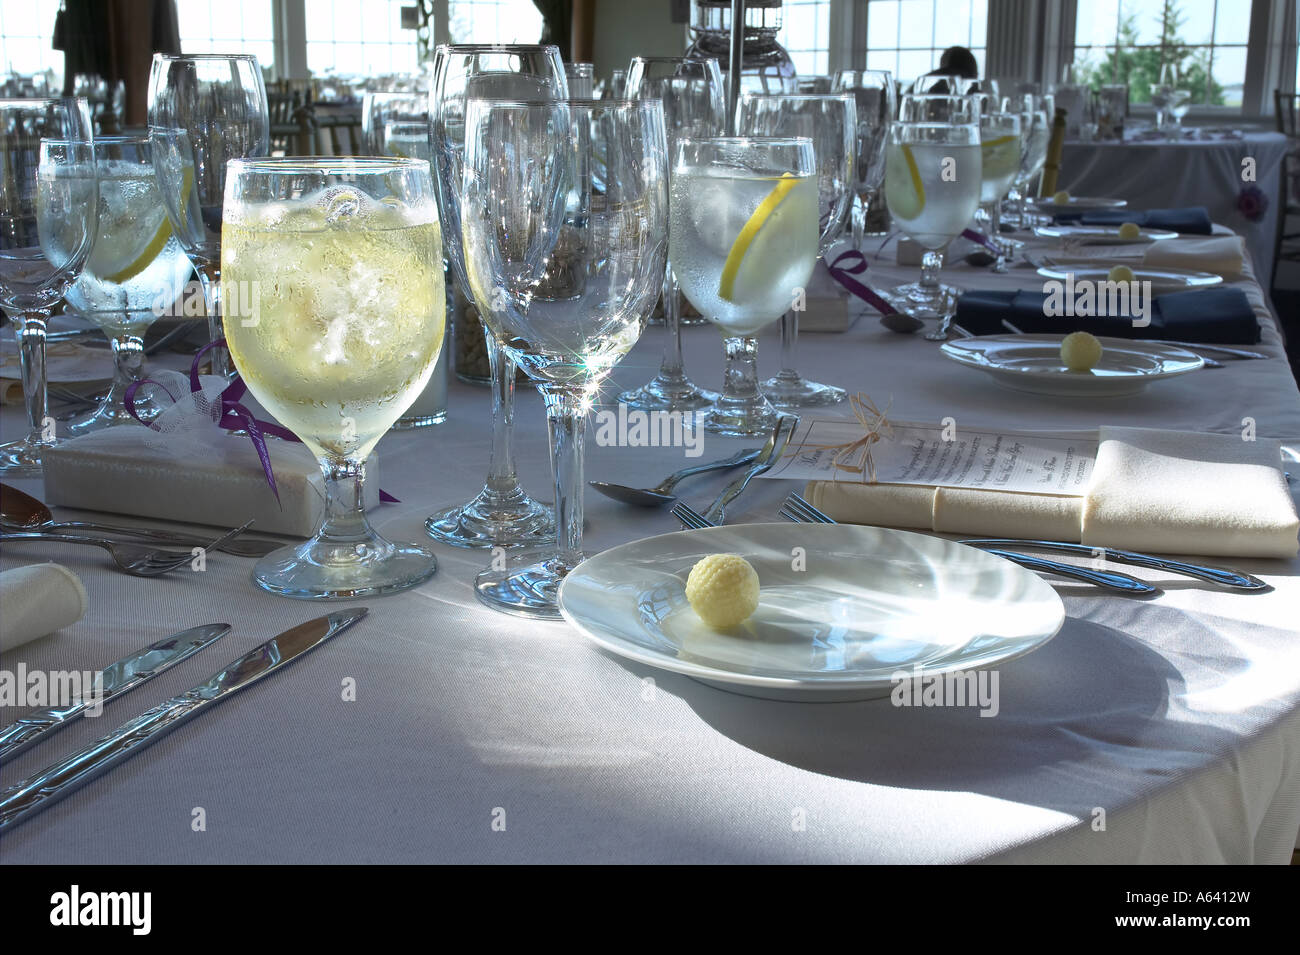 Bankett Tisch Detailansicht leer trinken Gläser vor der Hochzeit Feier Veranstaltung USA Stockfoto